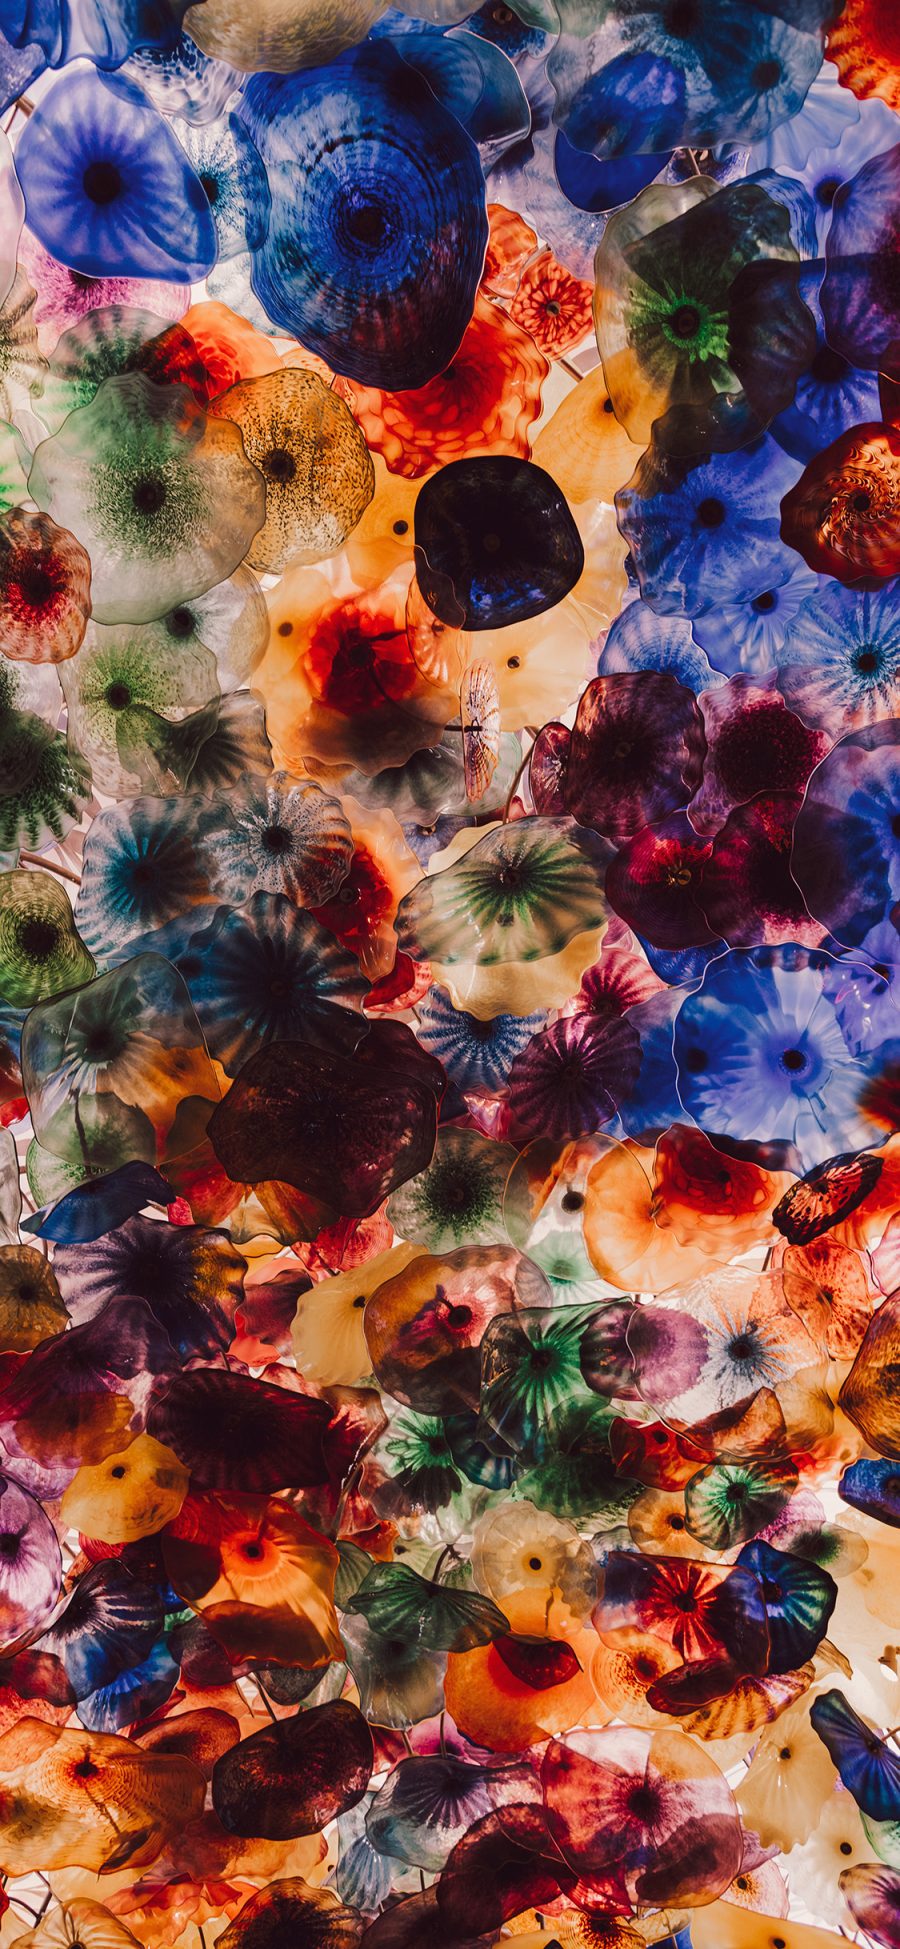 [2436×1125]海洋生物 水母 海蜇 色彩 密集 苹果手机壁纸图片